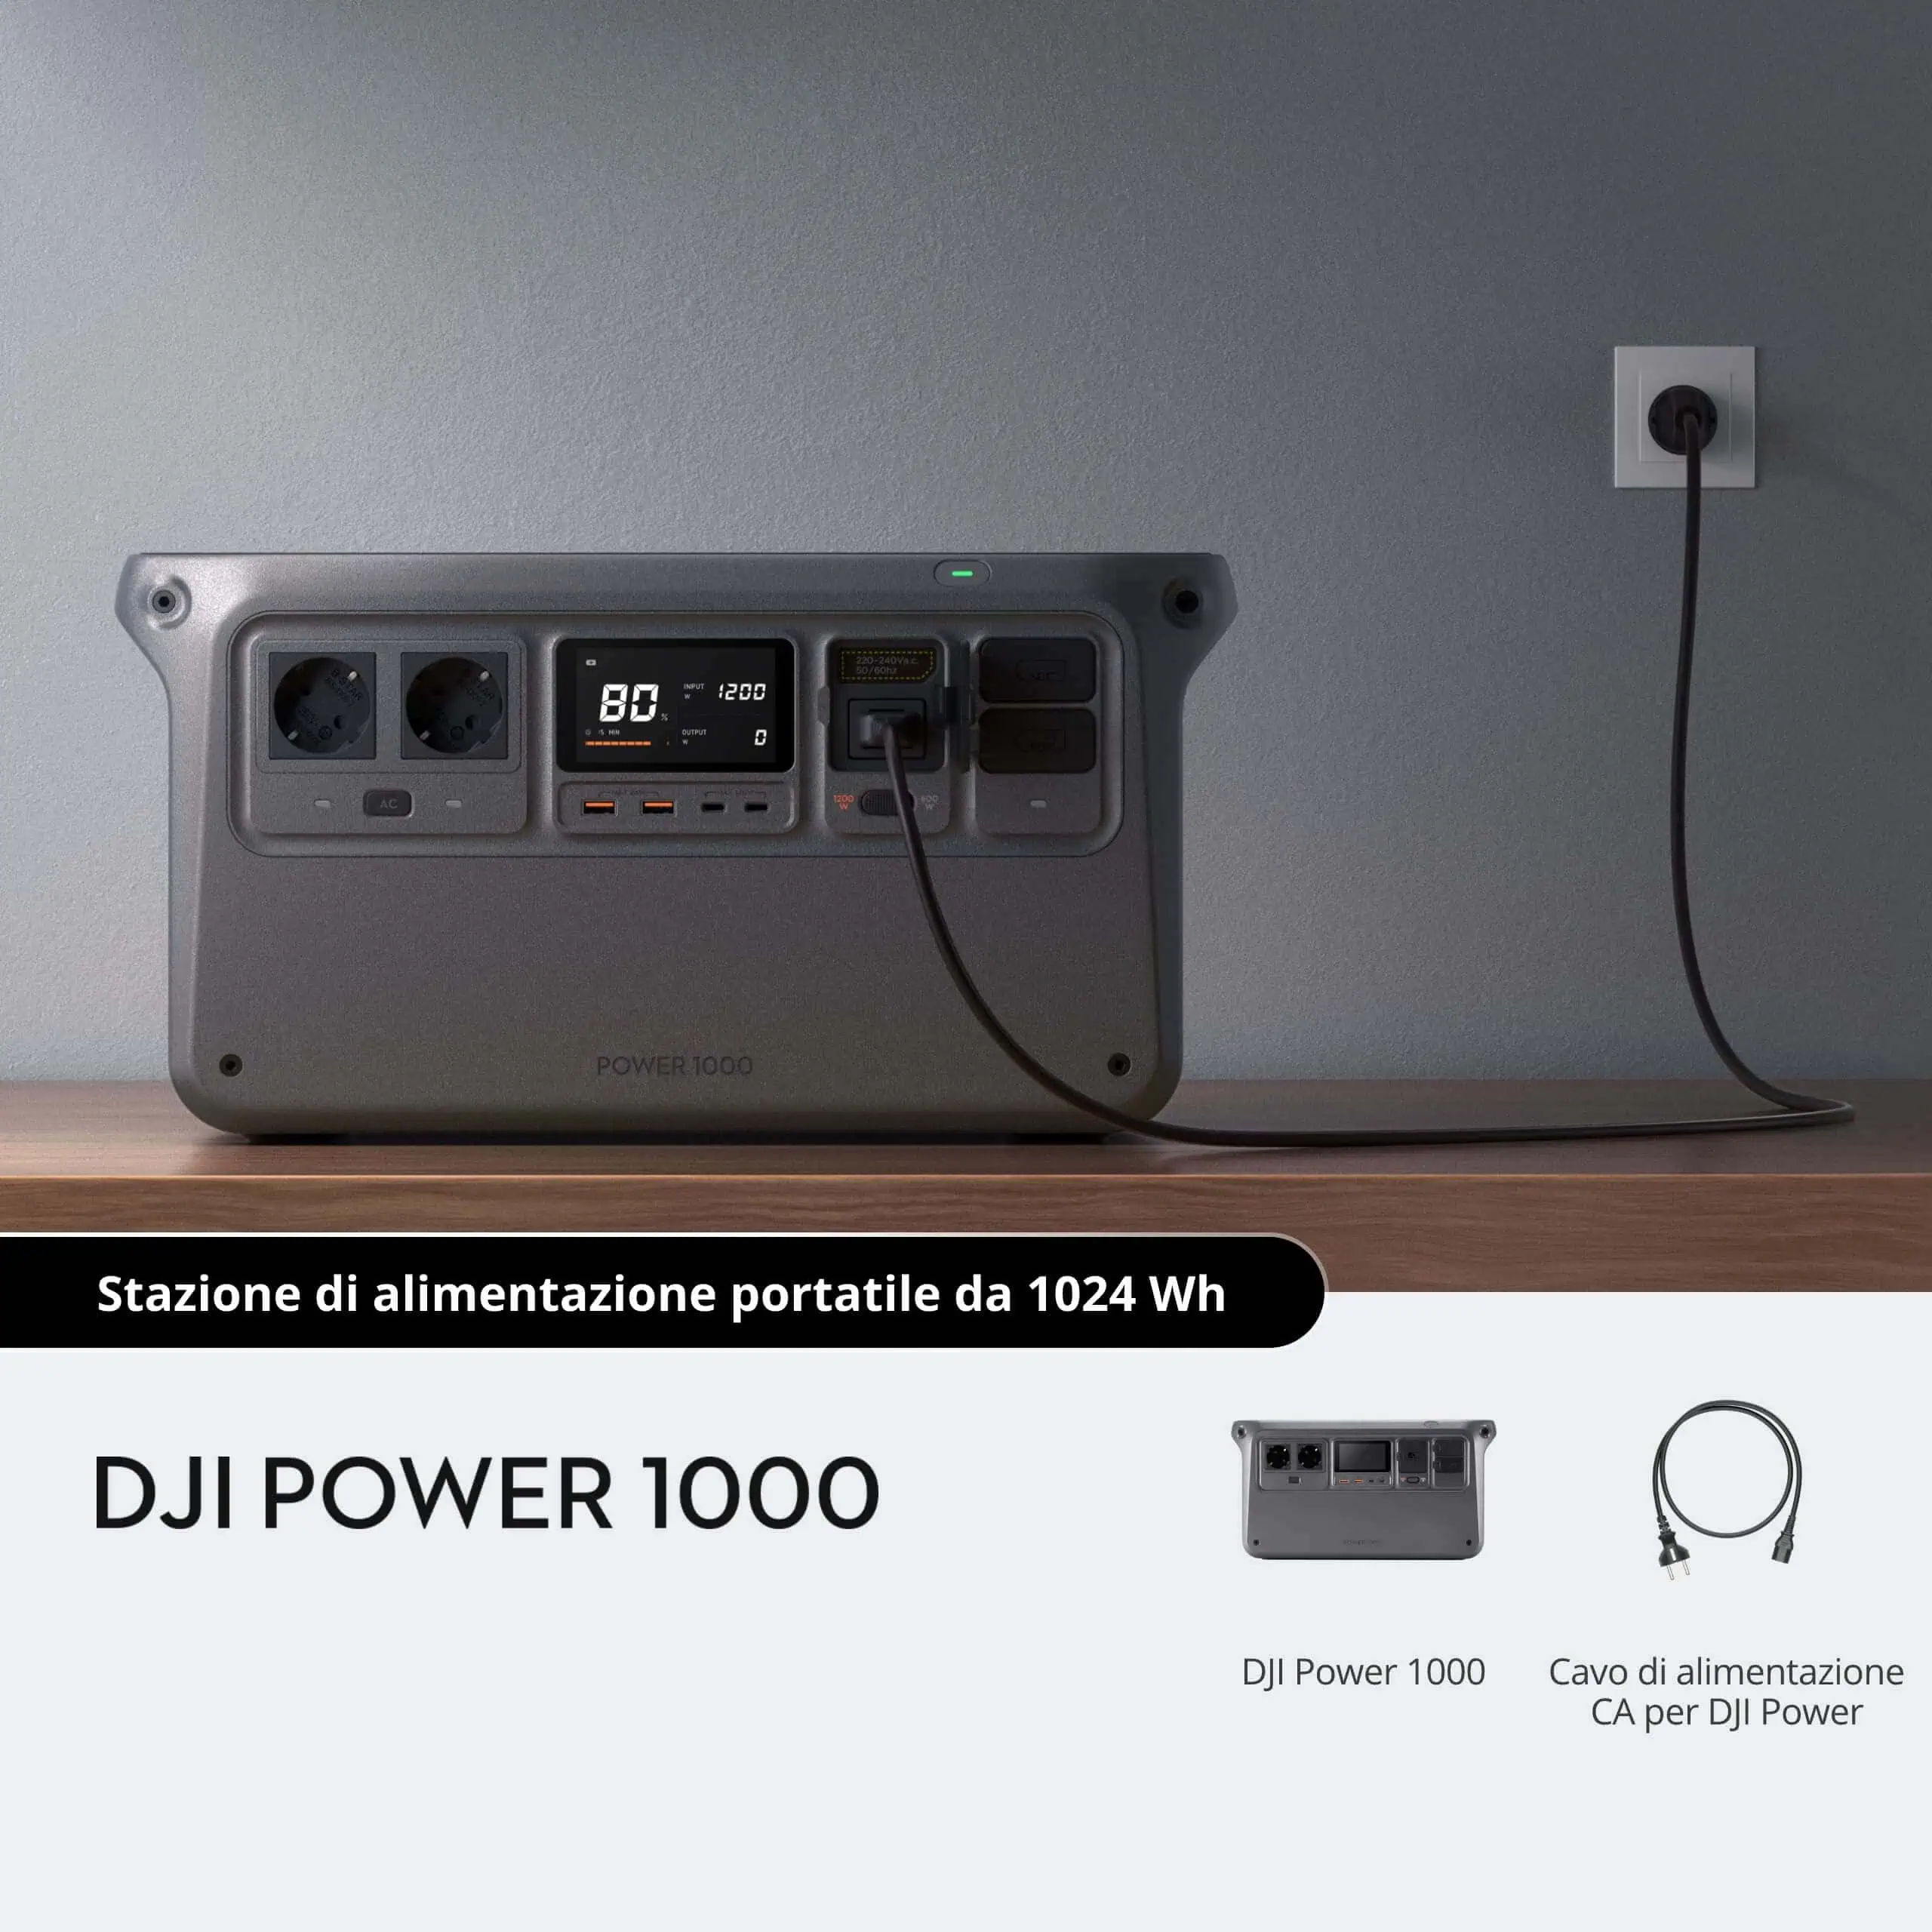 DJI Power